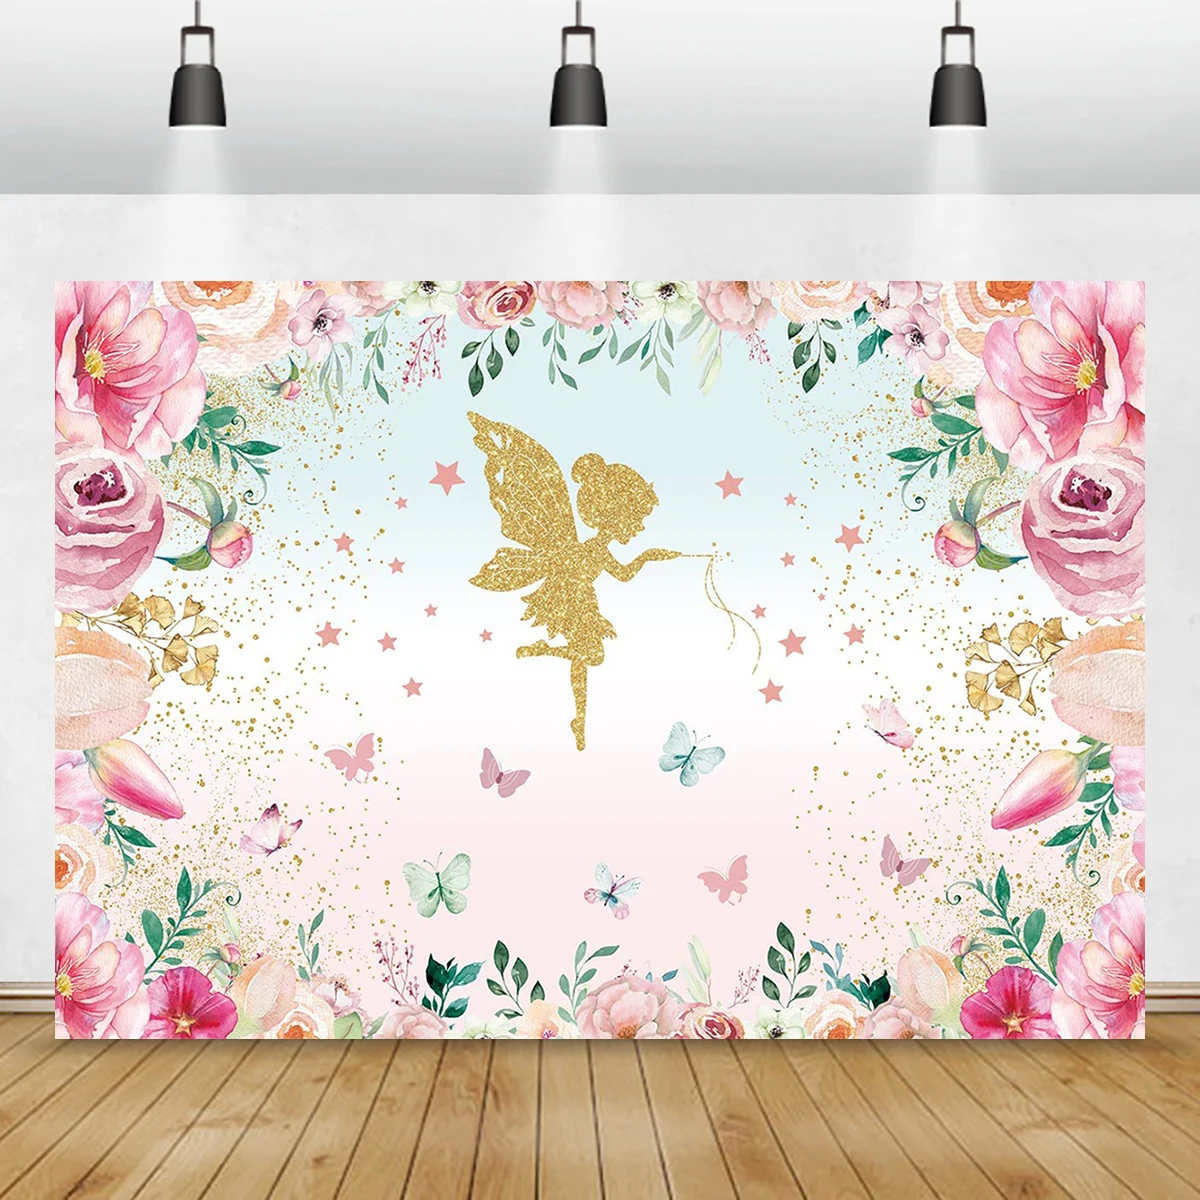 

Фон для фотосъемки с изображением золотых цветов Феи румян розовых и фиолетовых цветов в горошек принцессы